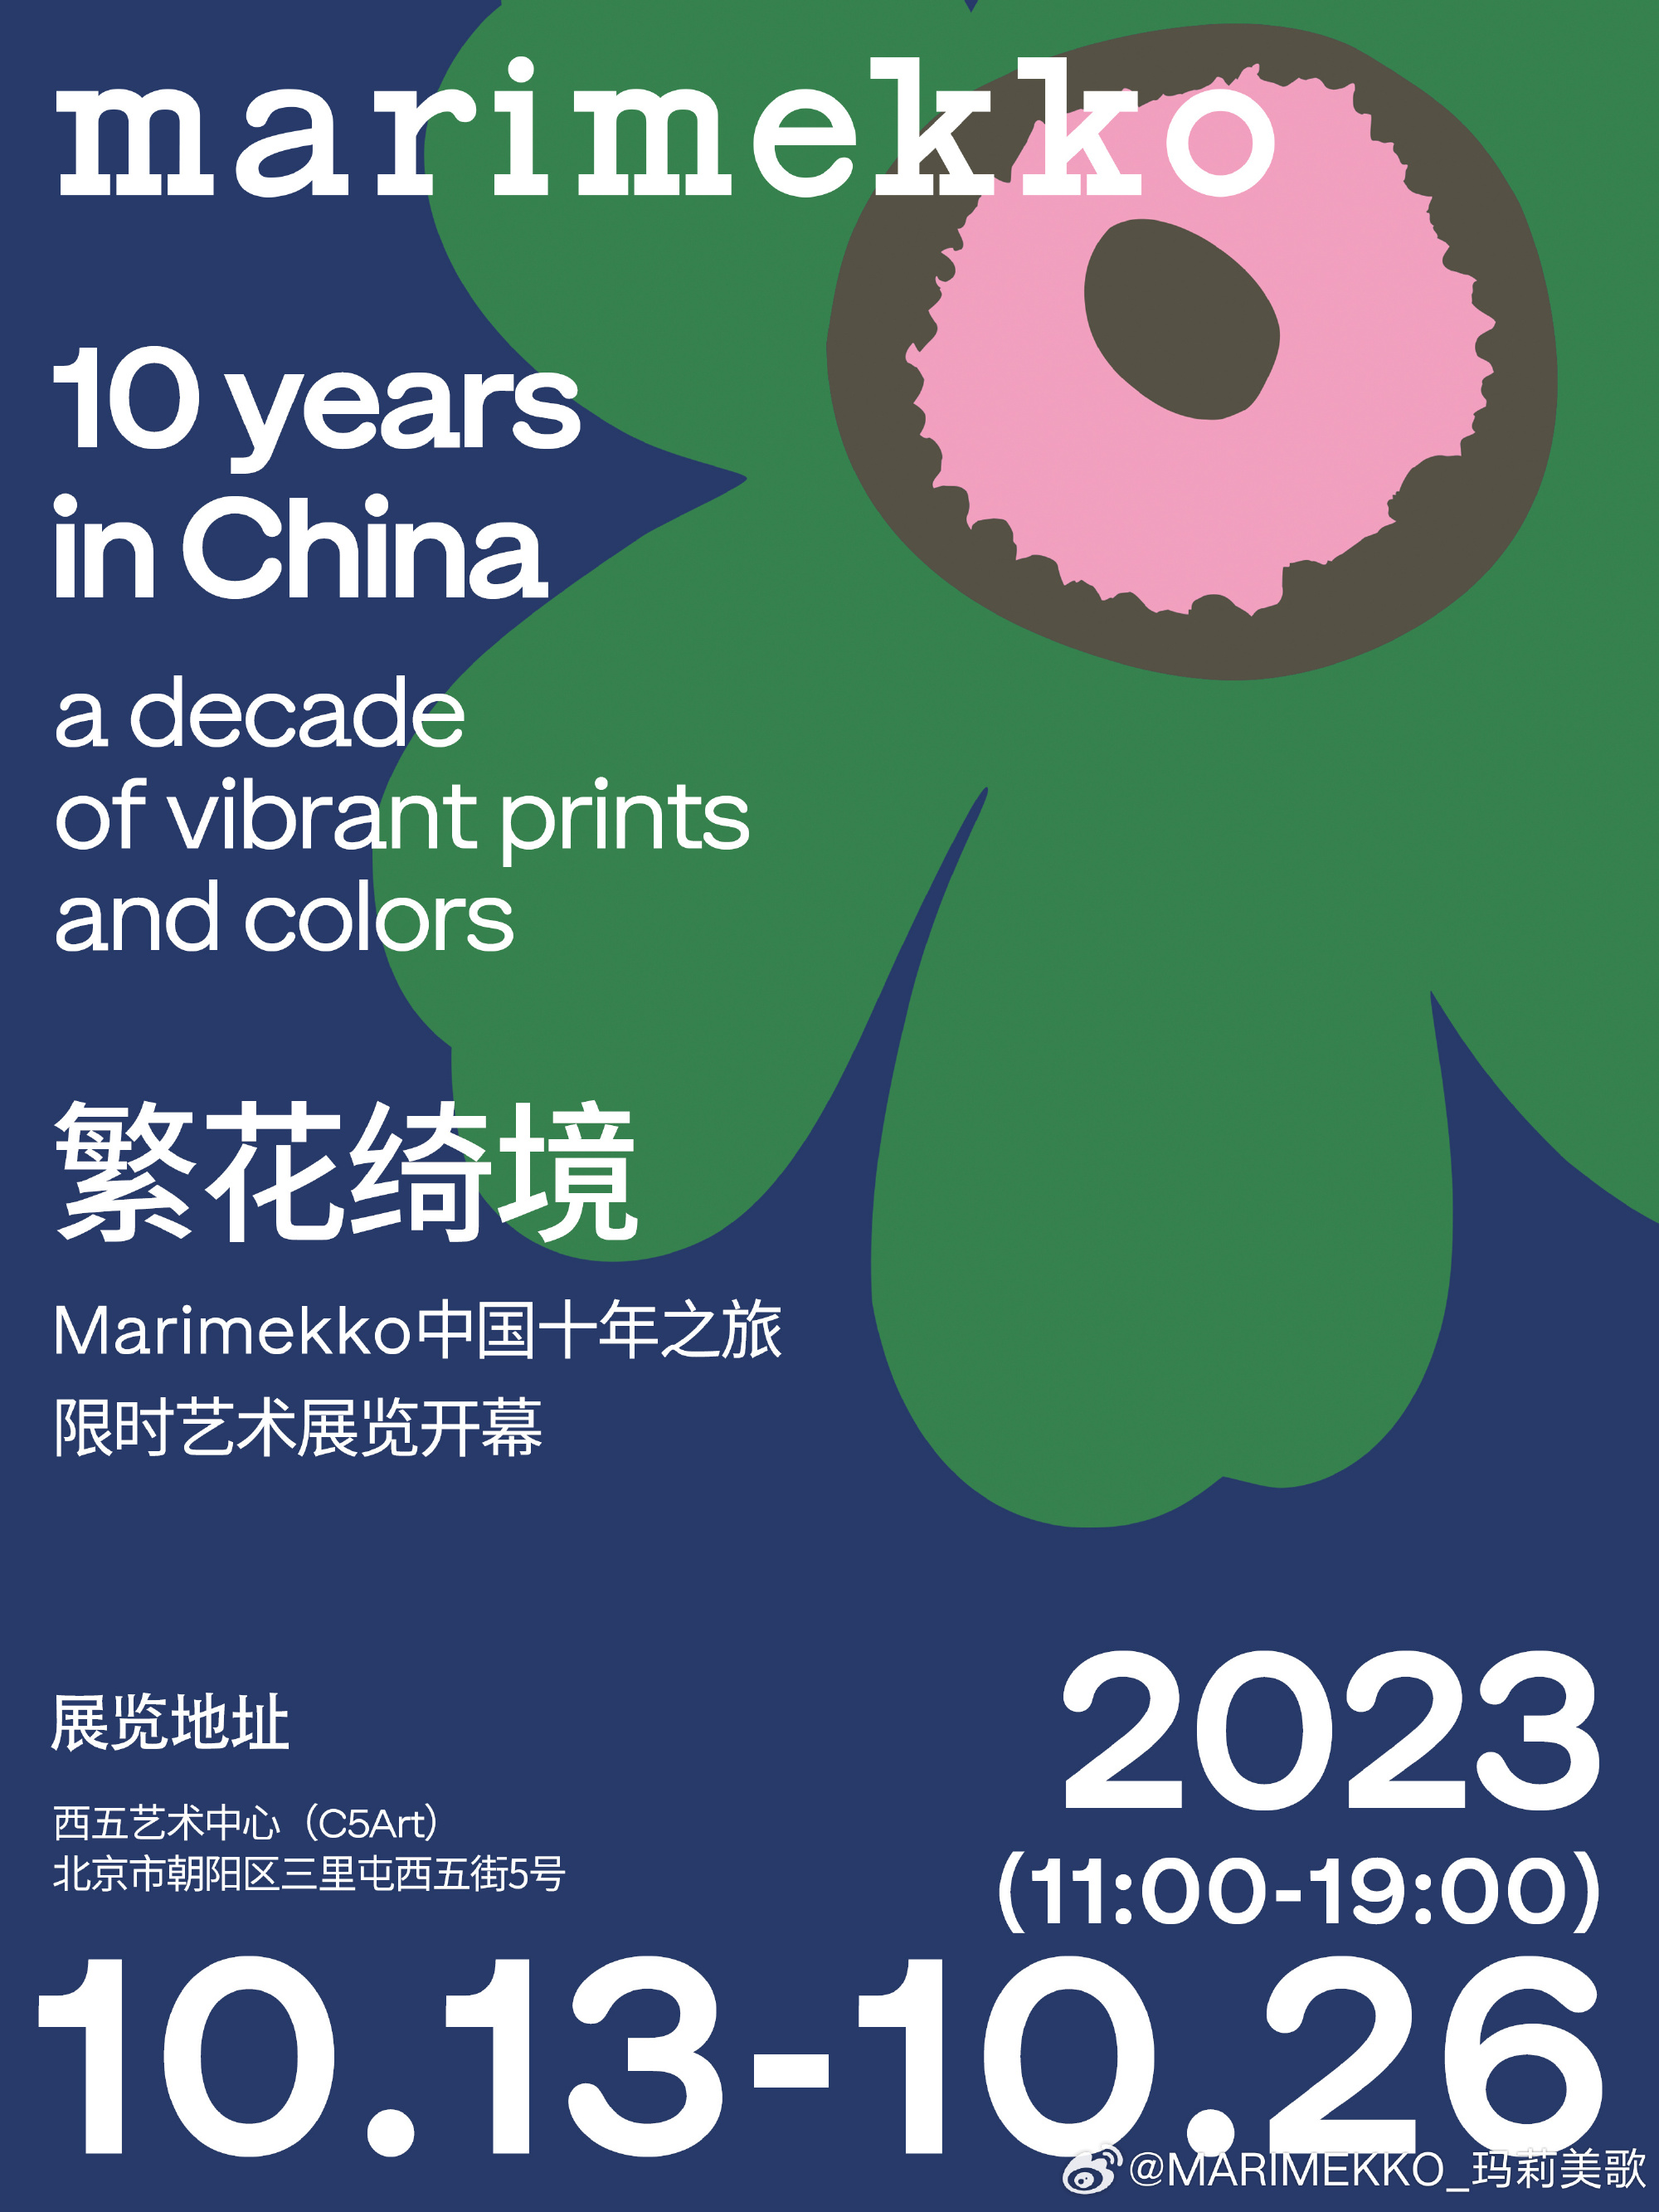 Marimekko 举办 10 周年艺术展